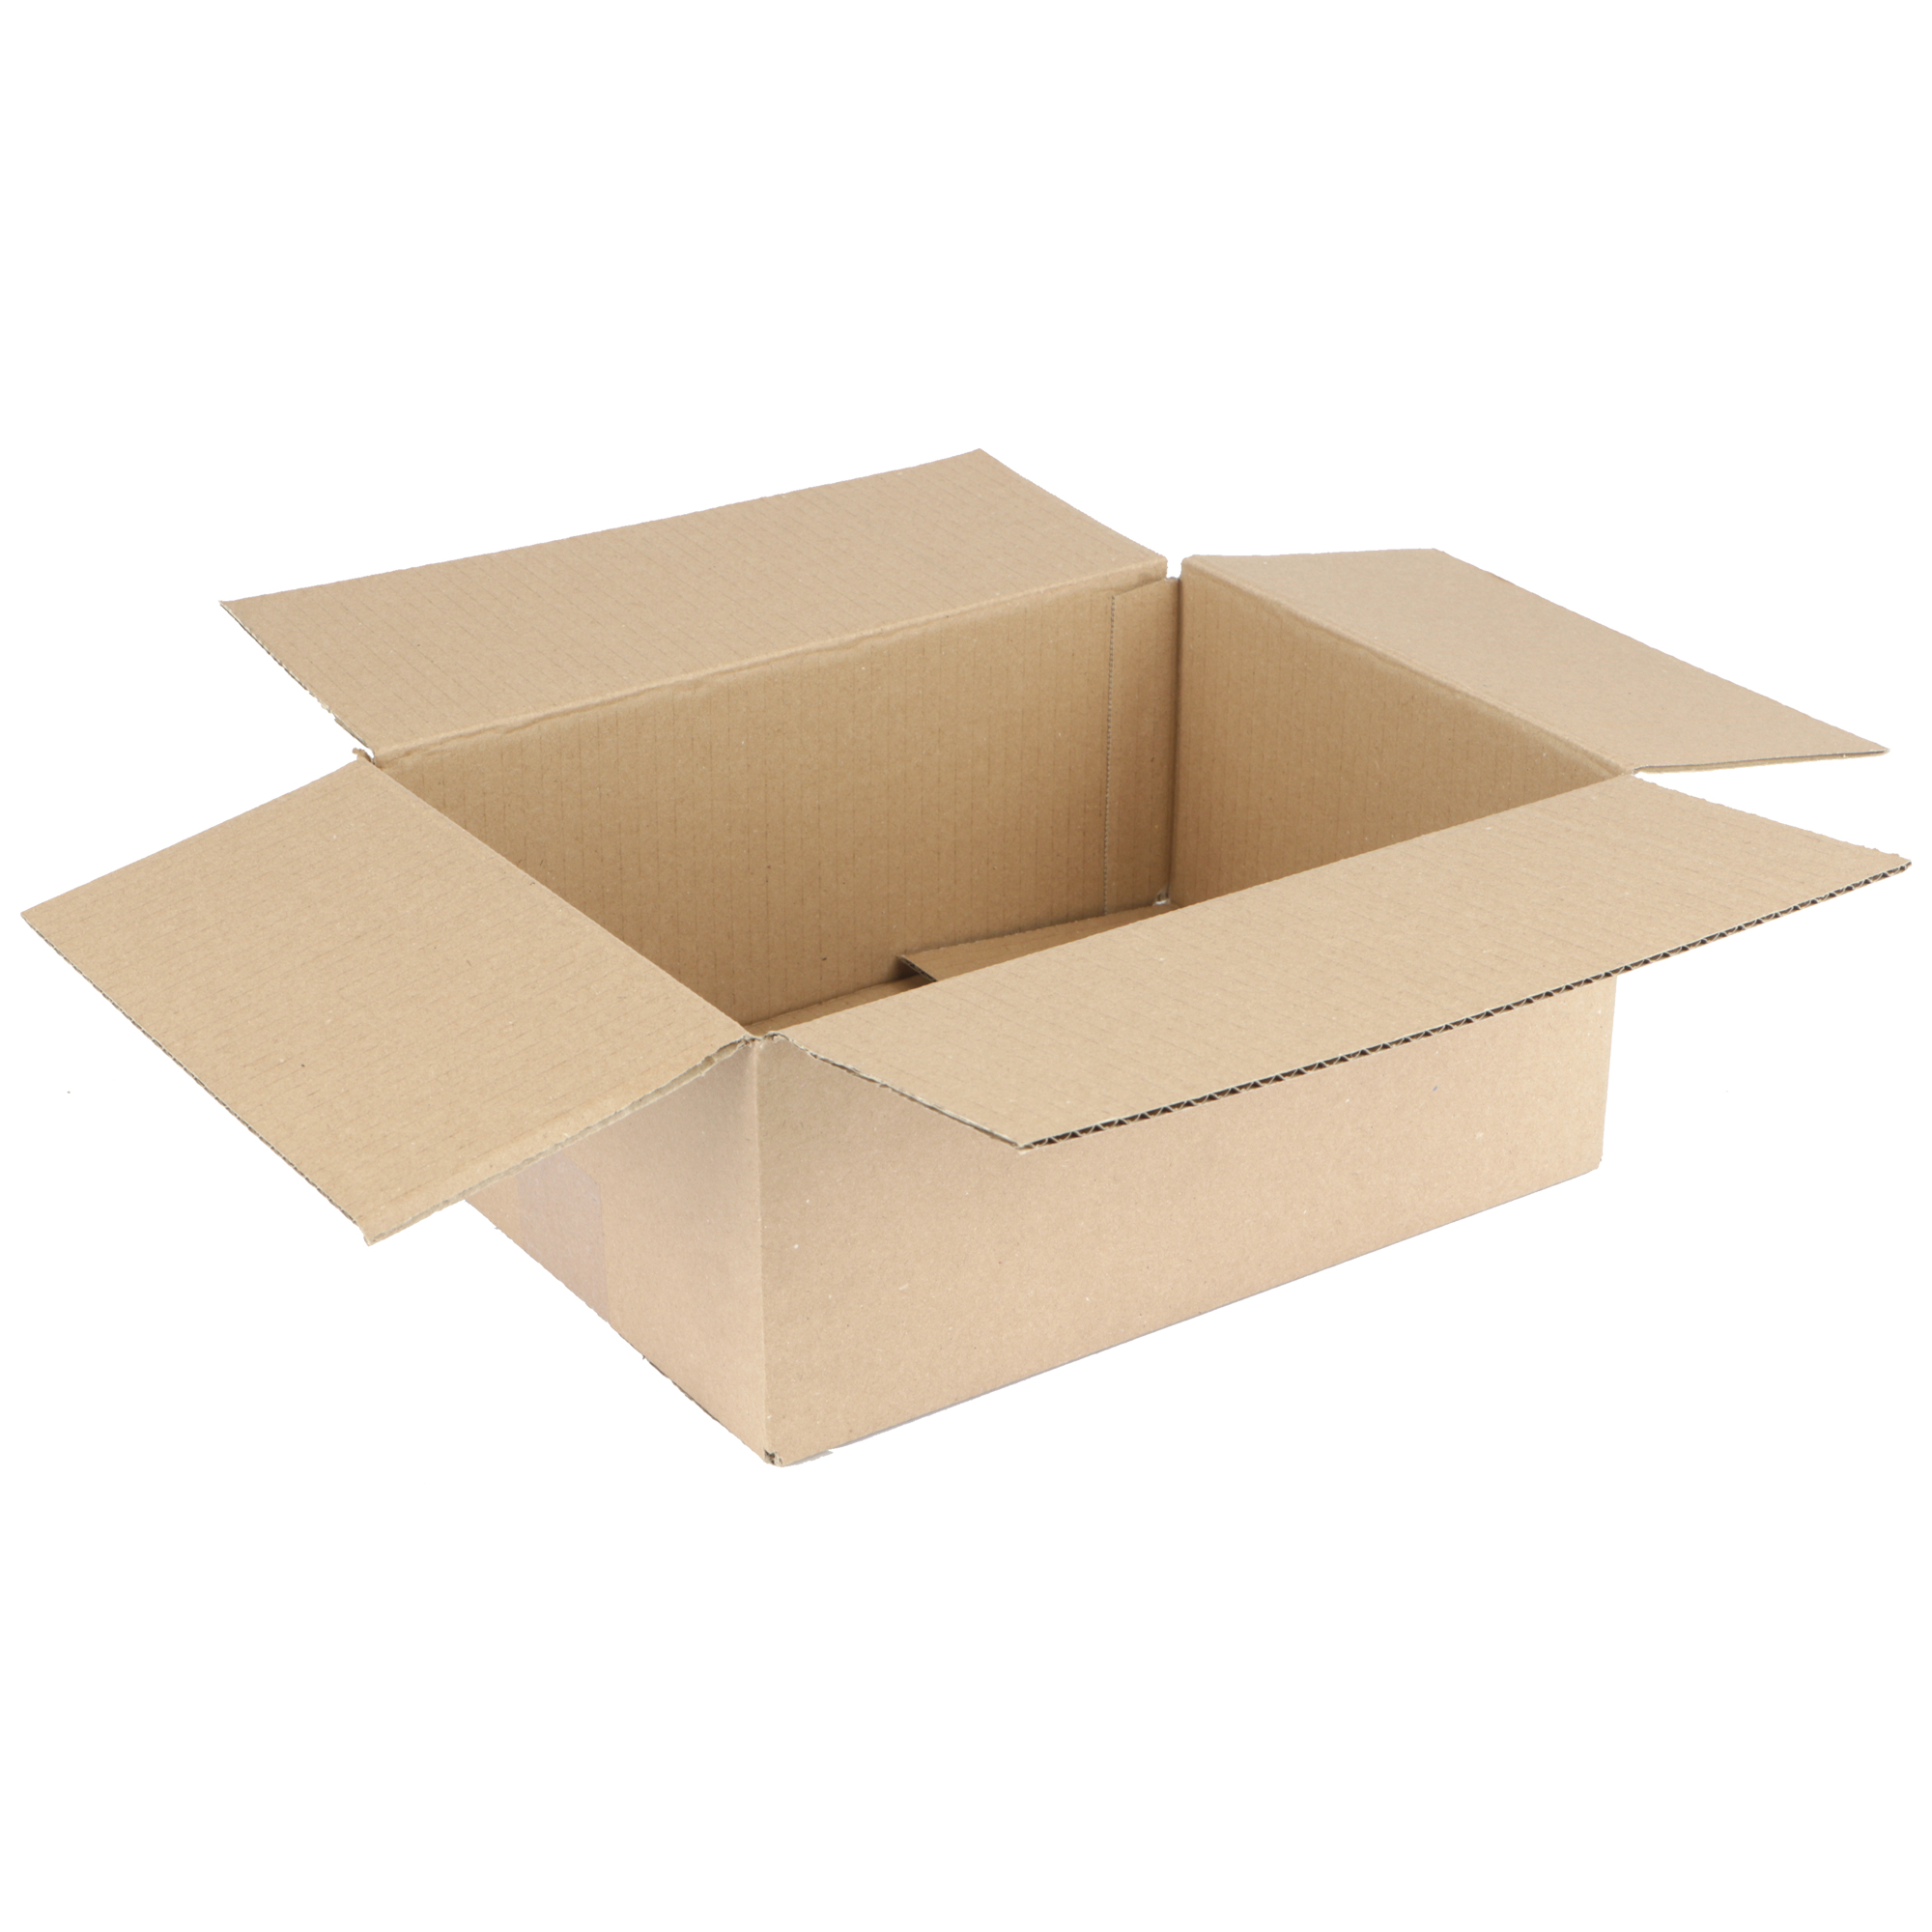 Afbeelding van Kartonnen doos 28,8x21,6x12,1 cm bruin enkel golf